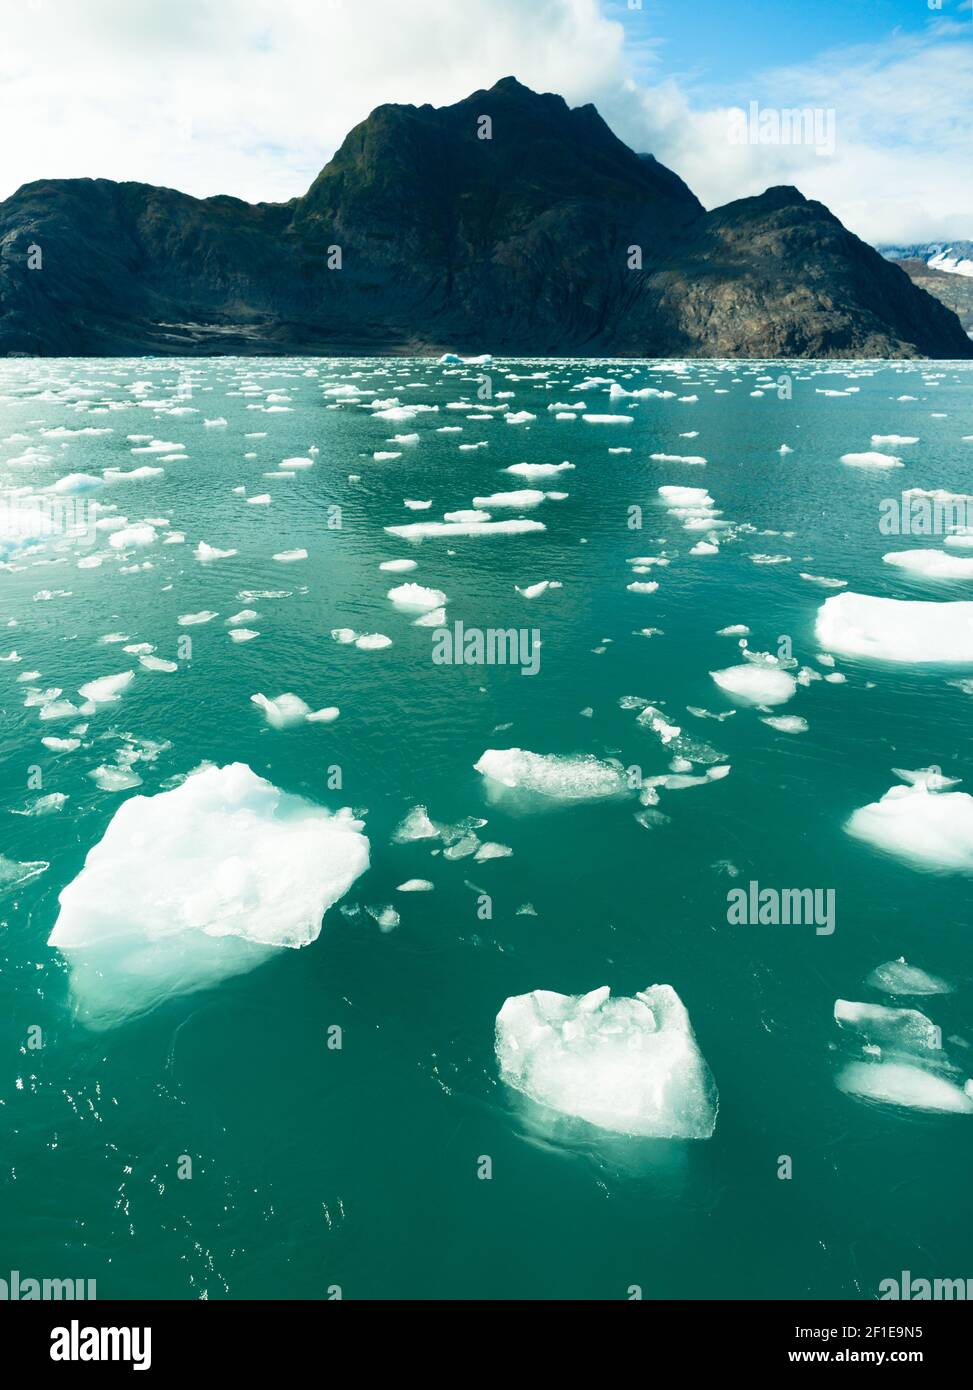 Schwimmende Eisberge Pazifik Aialik Bay Alaska Nordamerika Stockfoto